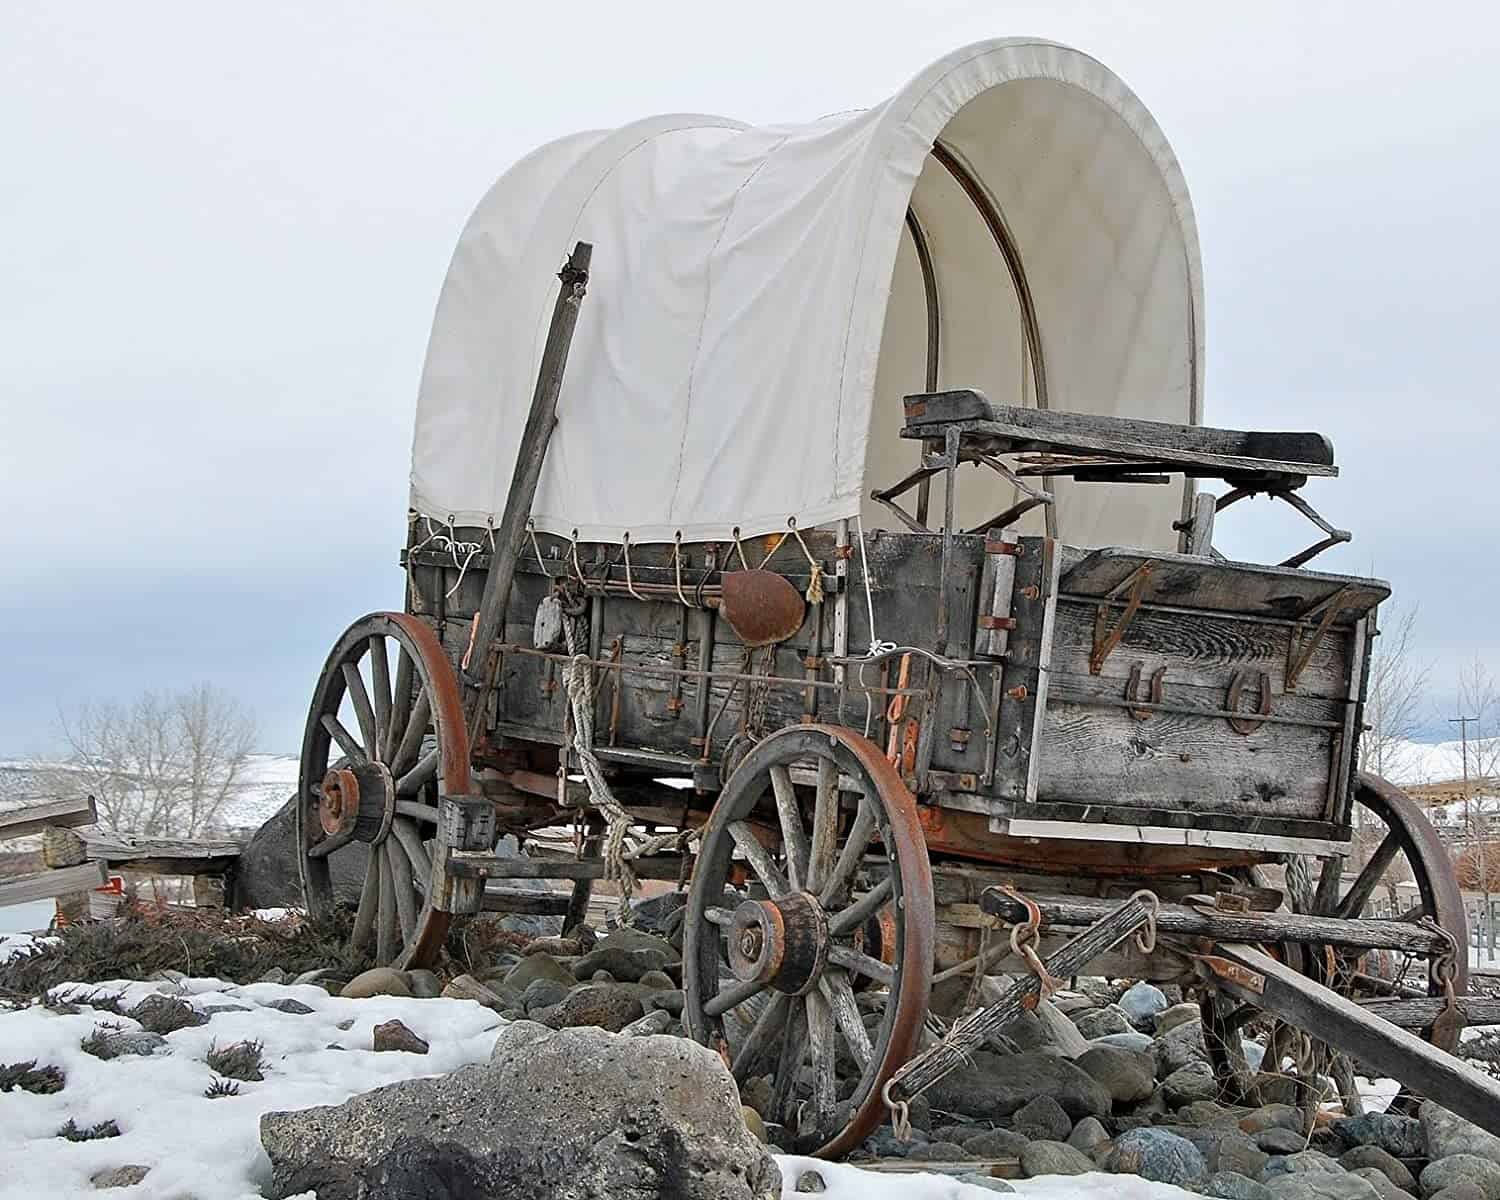 The Conestoga wagon